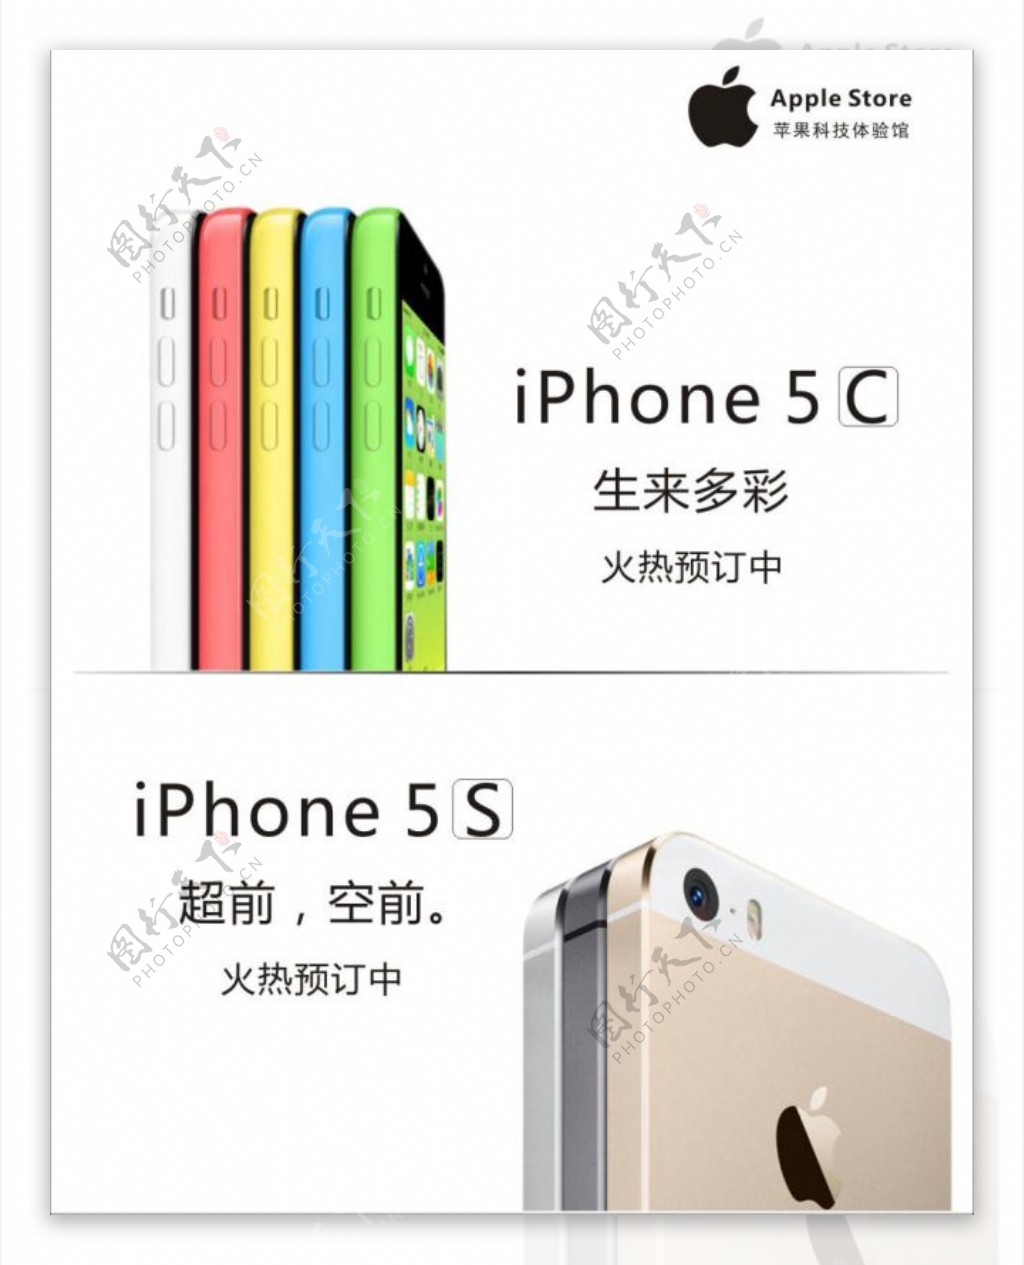 苹果5S和5C手机预定海报矢量素材